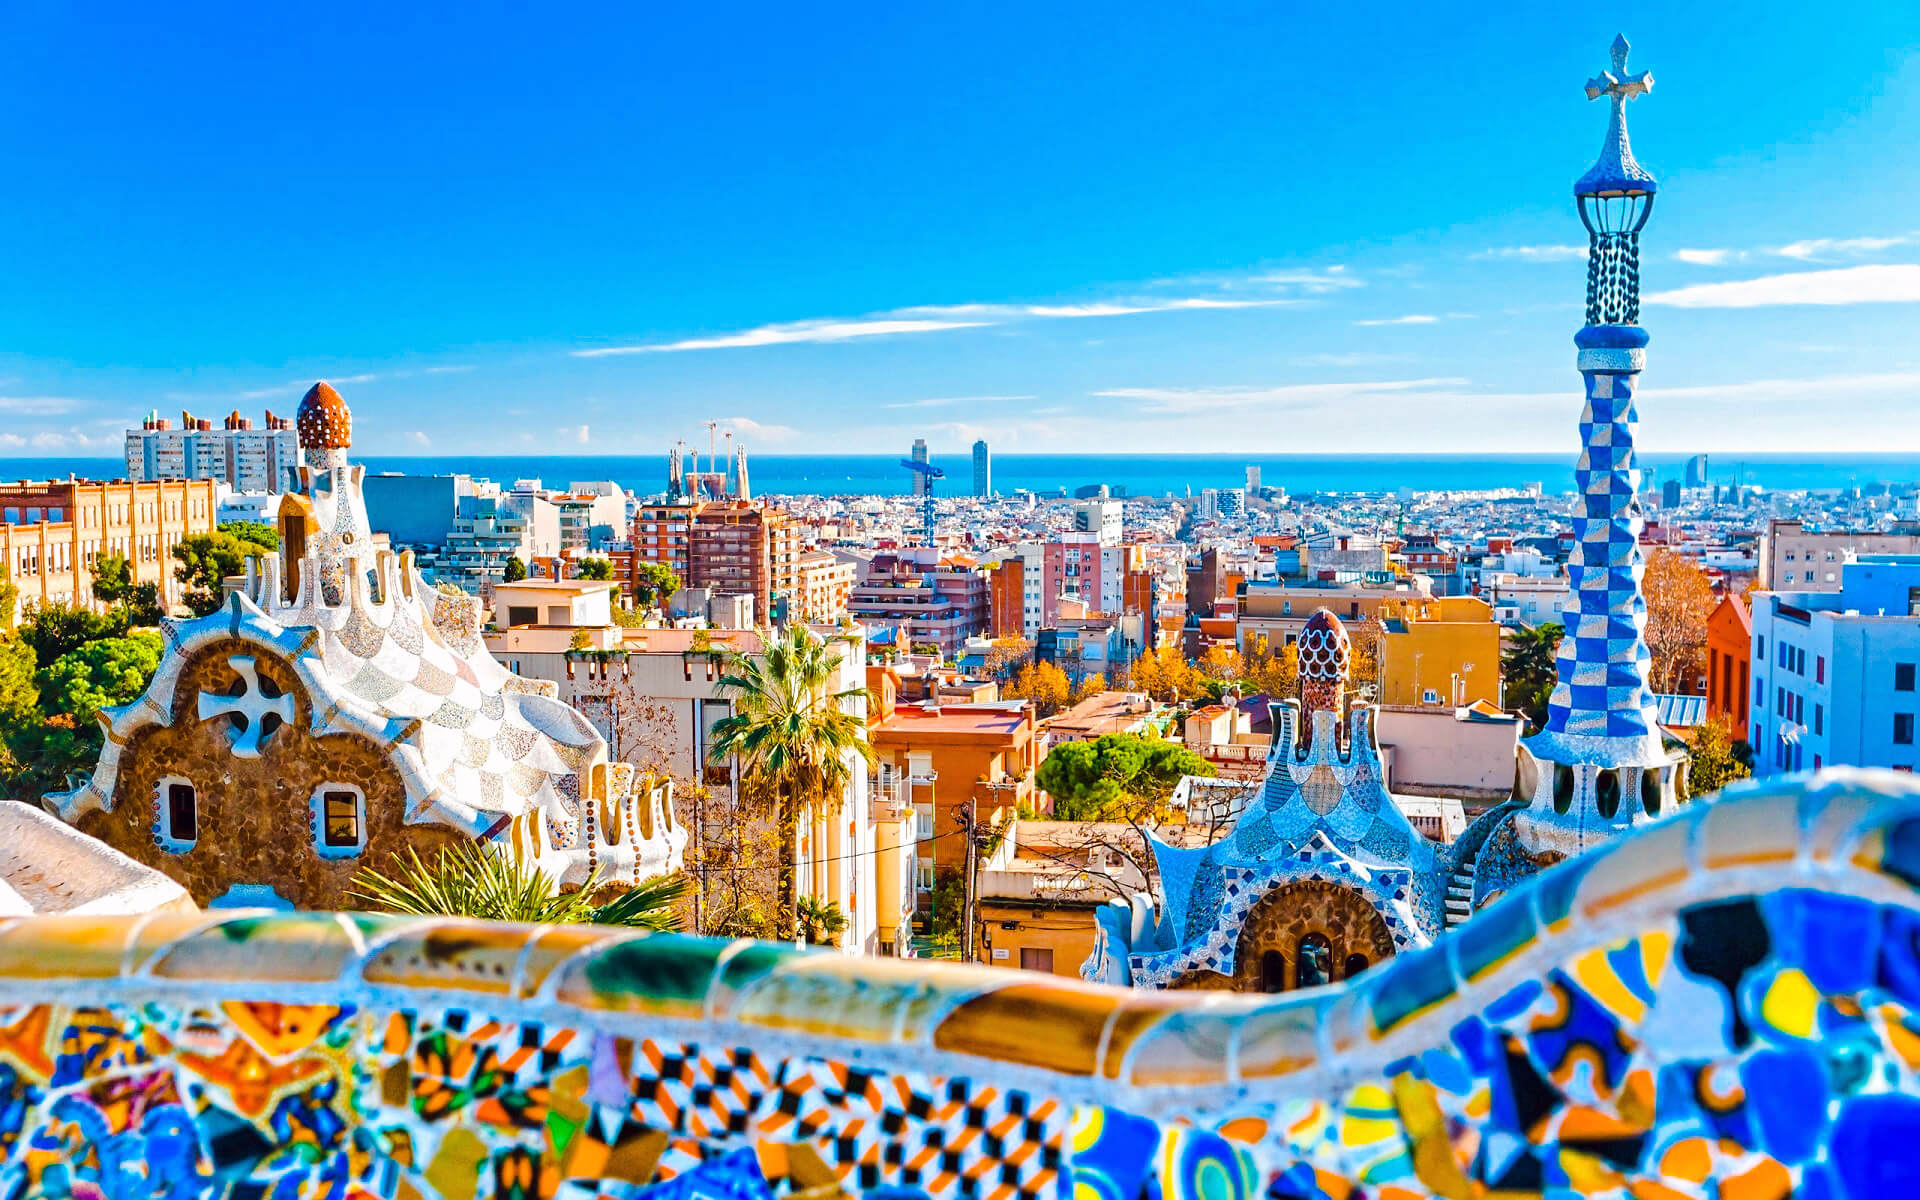 Barcelona Travel Guide - Travel S Helper